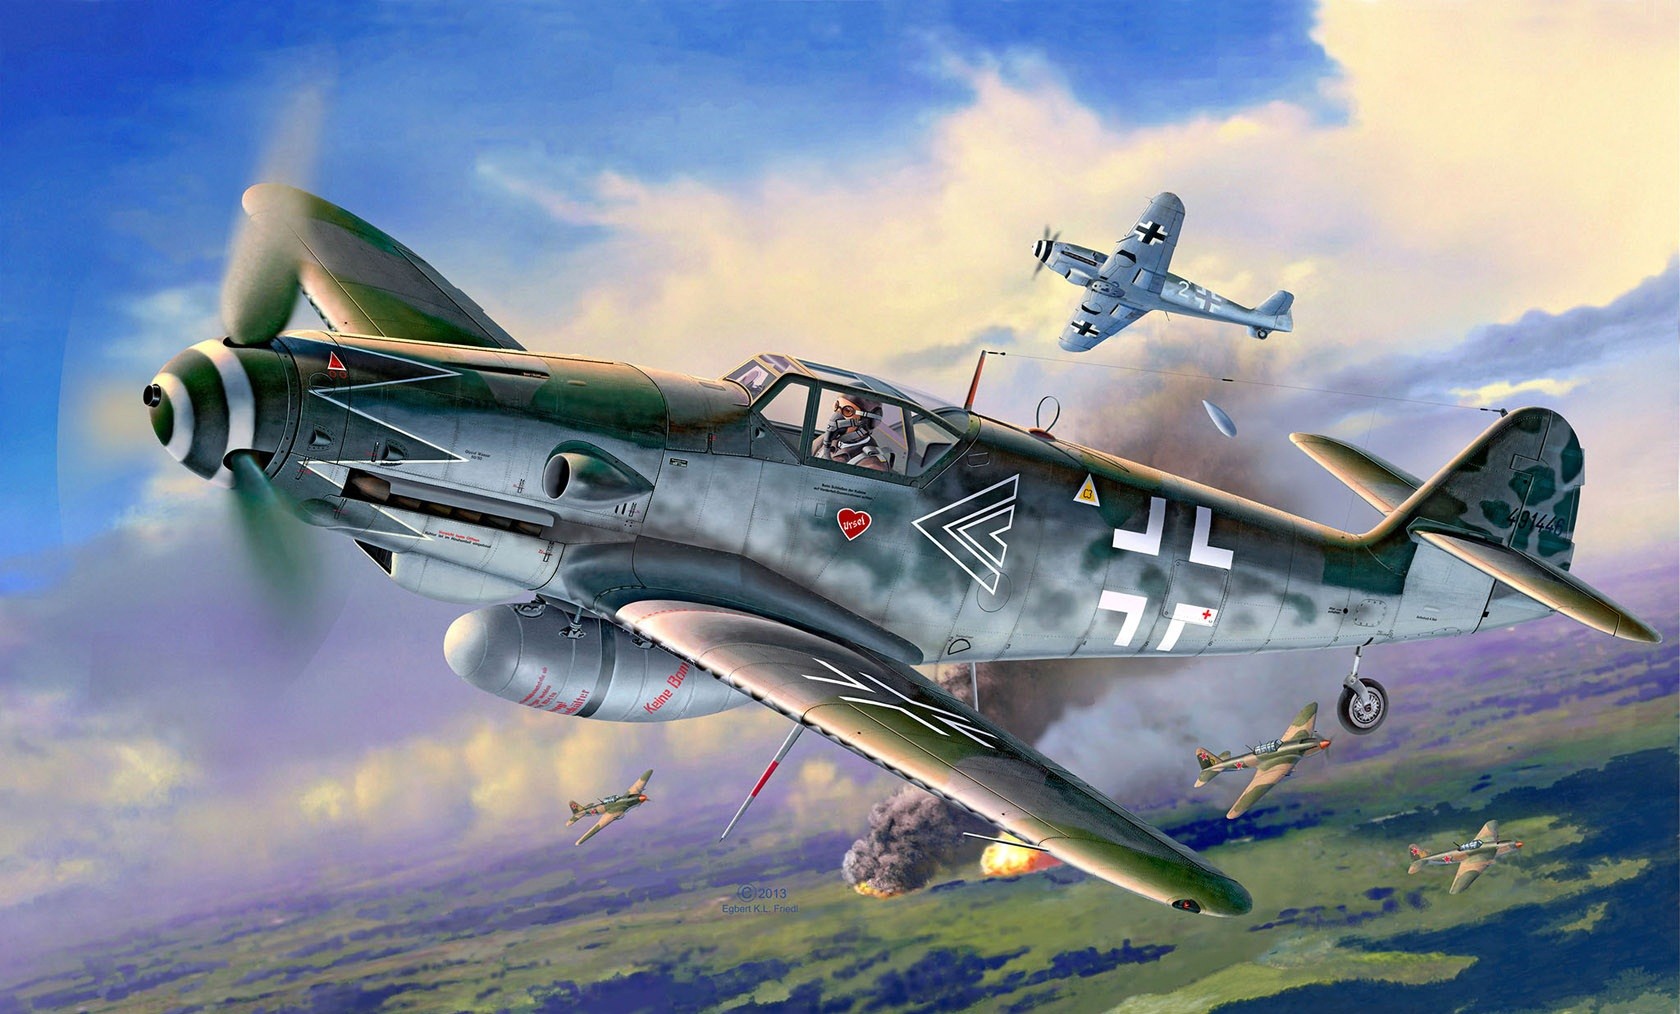 Messerschmitt Messerschmitt Bf 109 Luftwaffe Artwork Military Aircraft World War Ii Germany 1680x1014